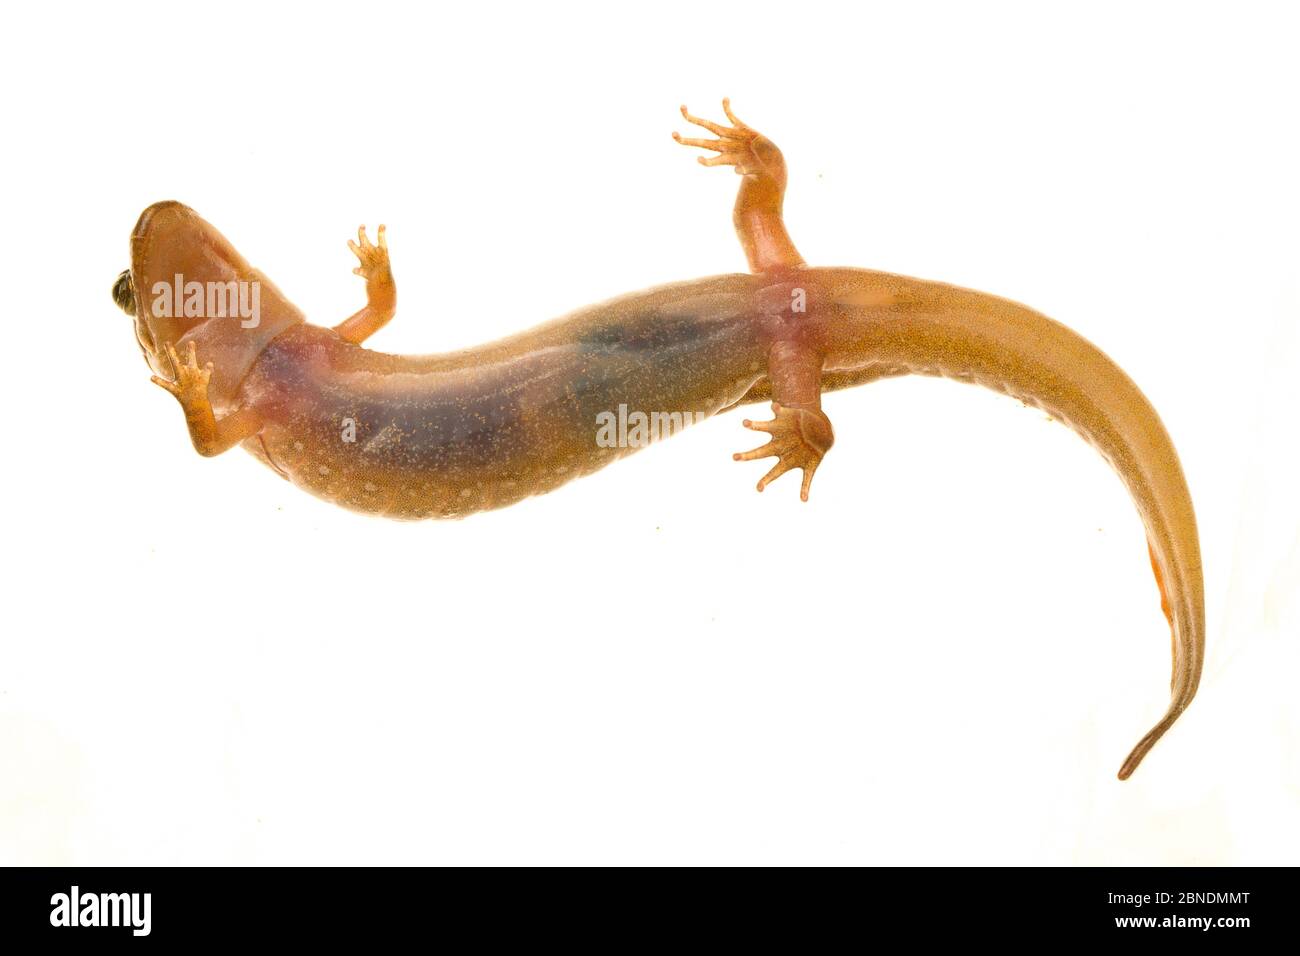 Salamandre sombre tacheté (Desmognathus conanti) Tishomingo, Mississippi, États-Unis, avril. Meetyourneighbors.net projet Banque D'Images